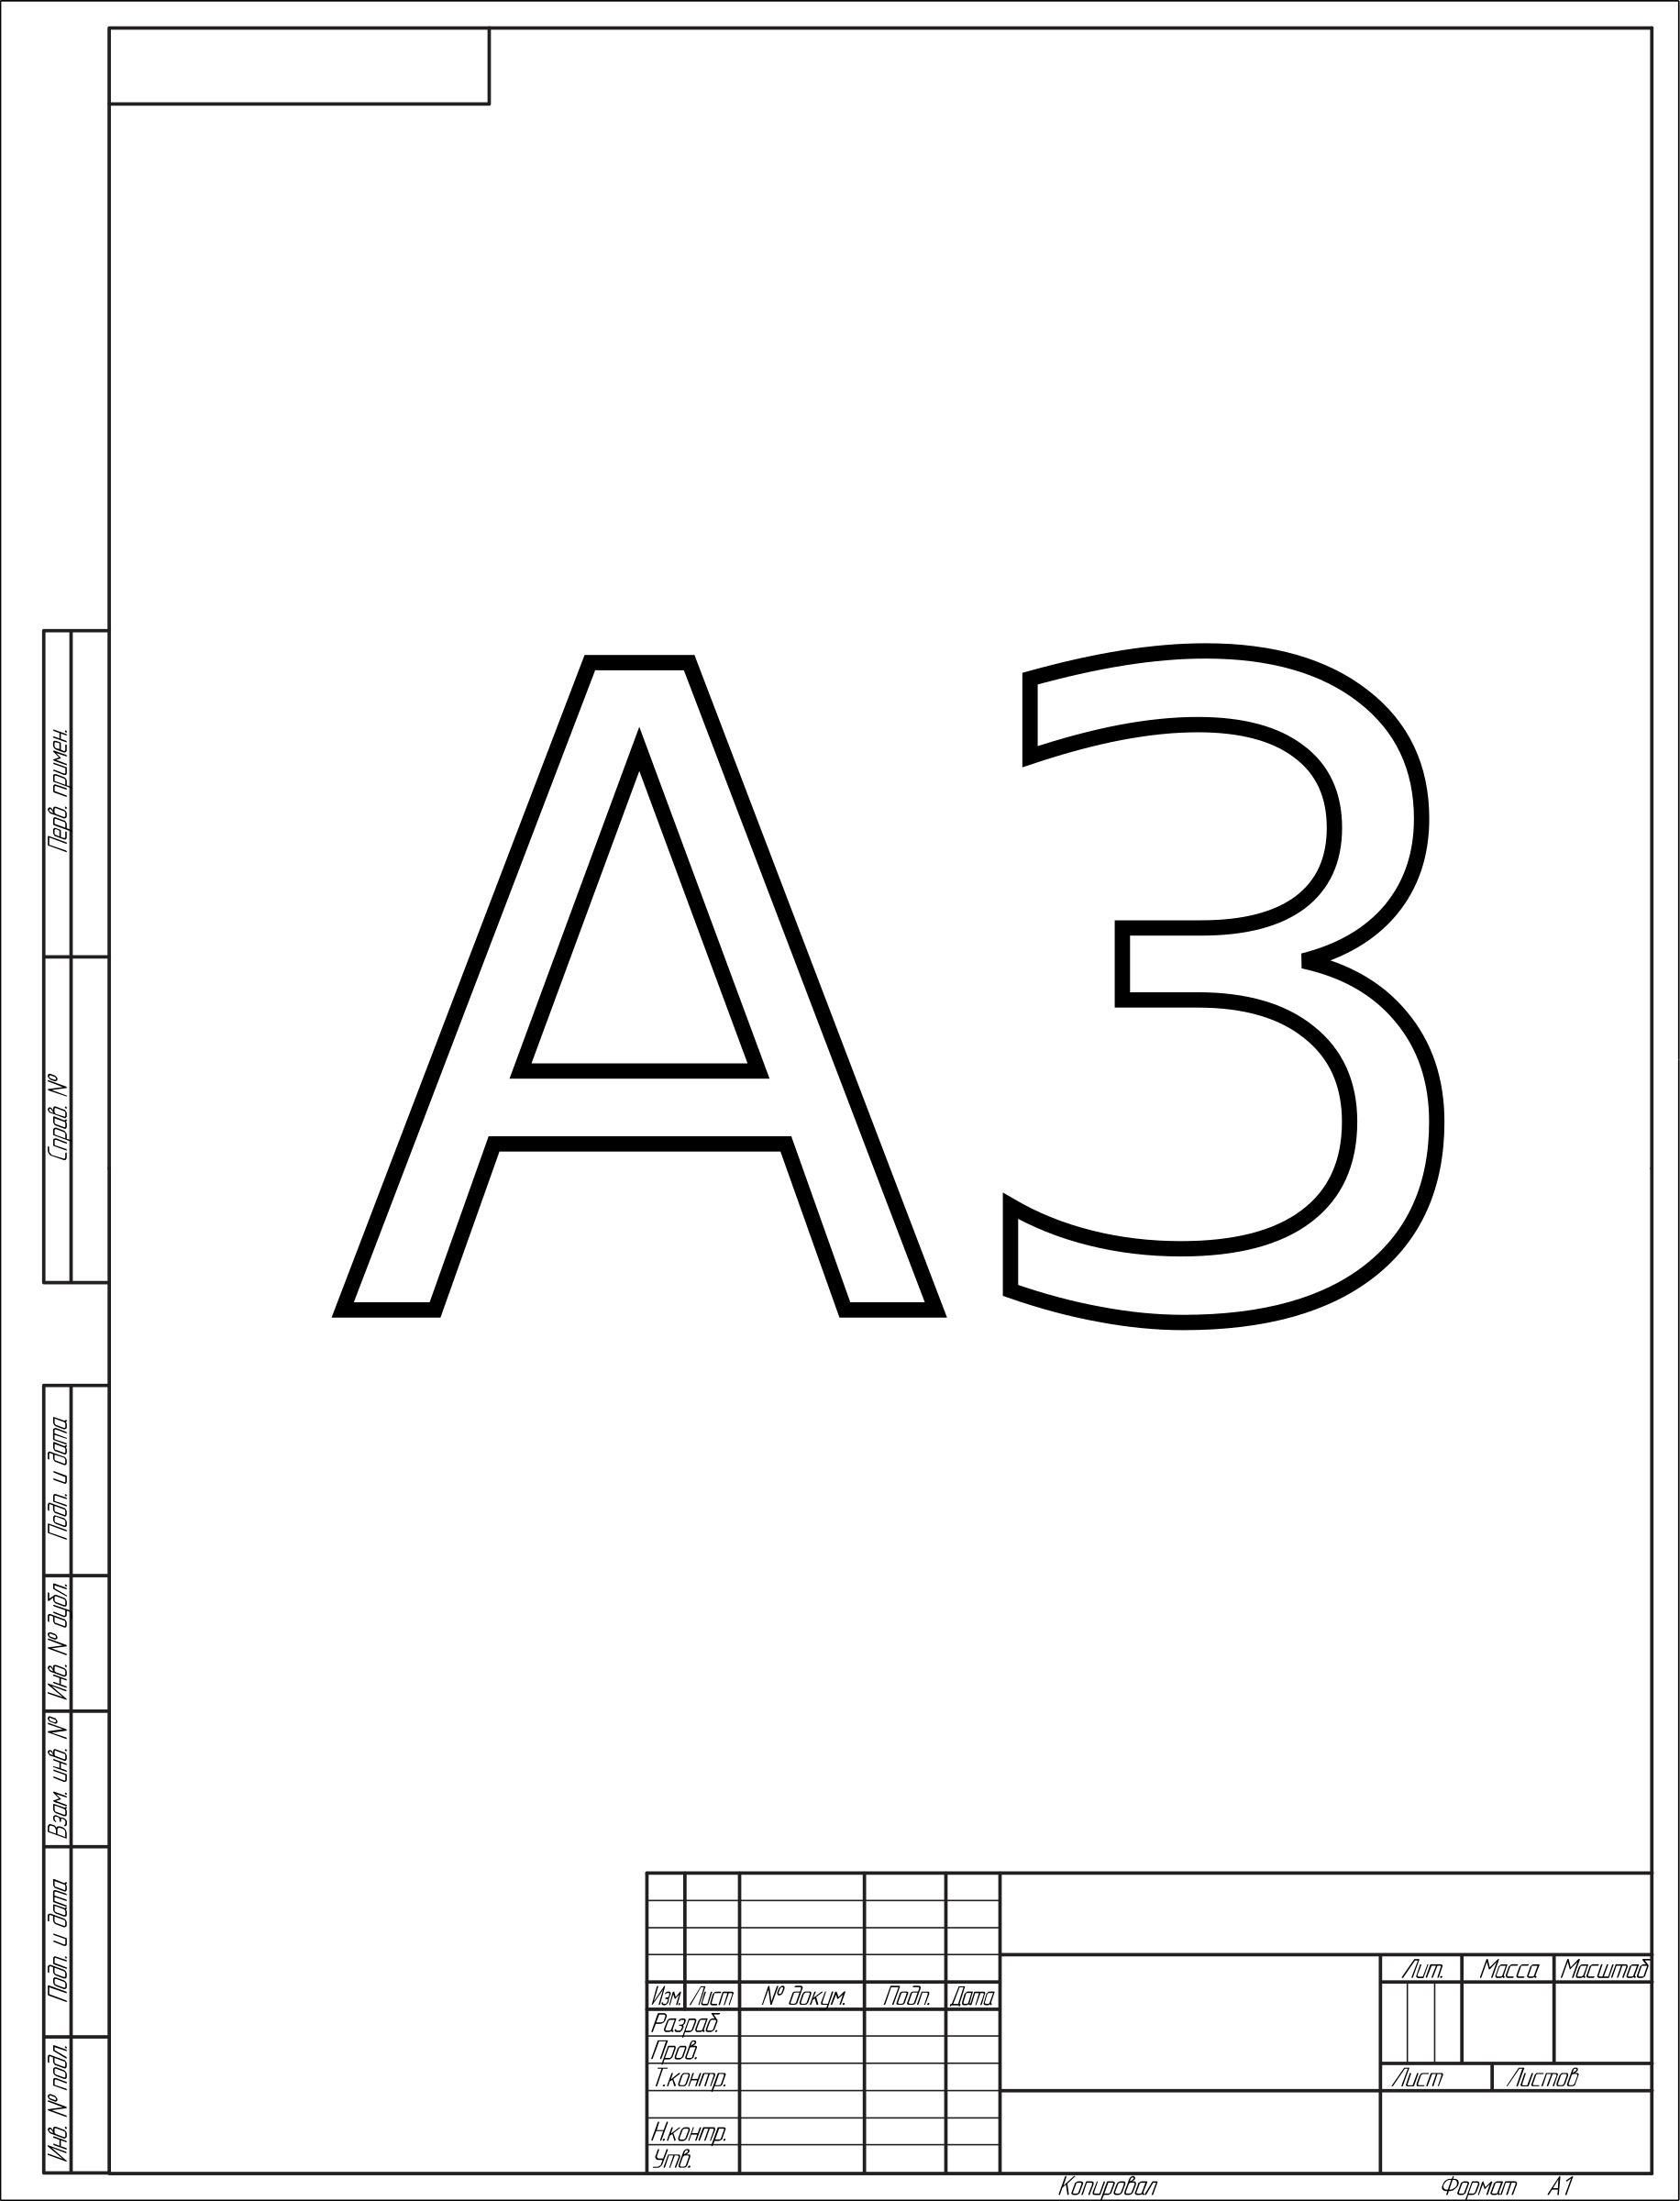 ESKD paper format A3 (vertical) png